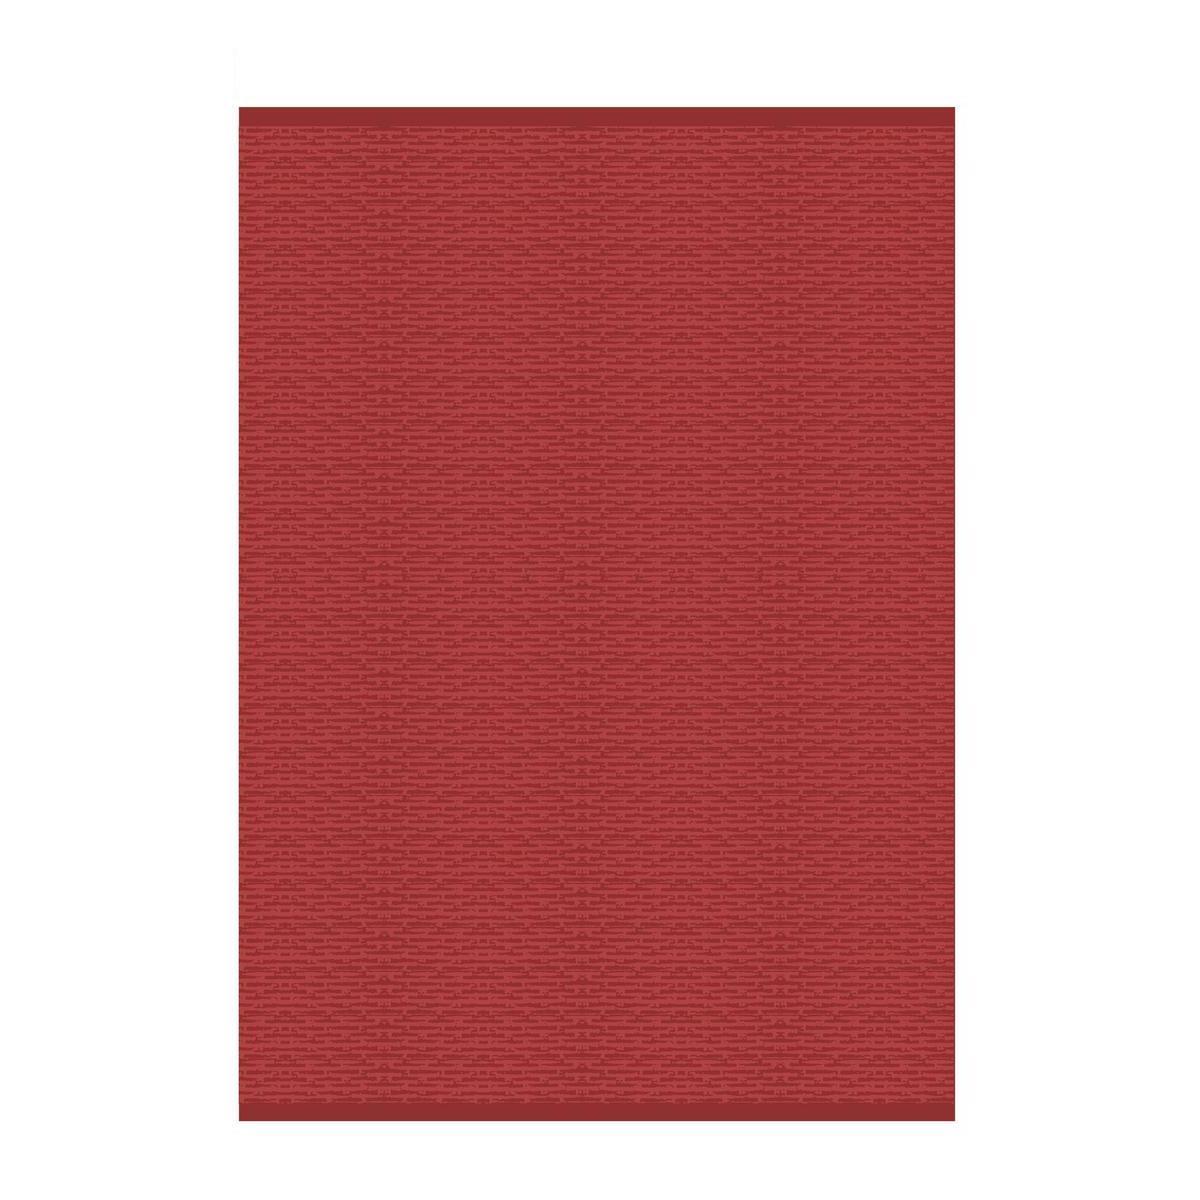 Tapis extérieur - Polypropylène - 120 x 170 cm - Rouge